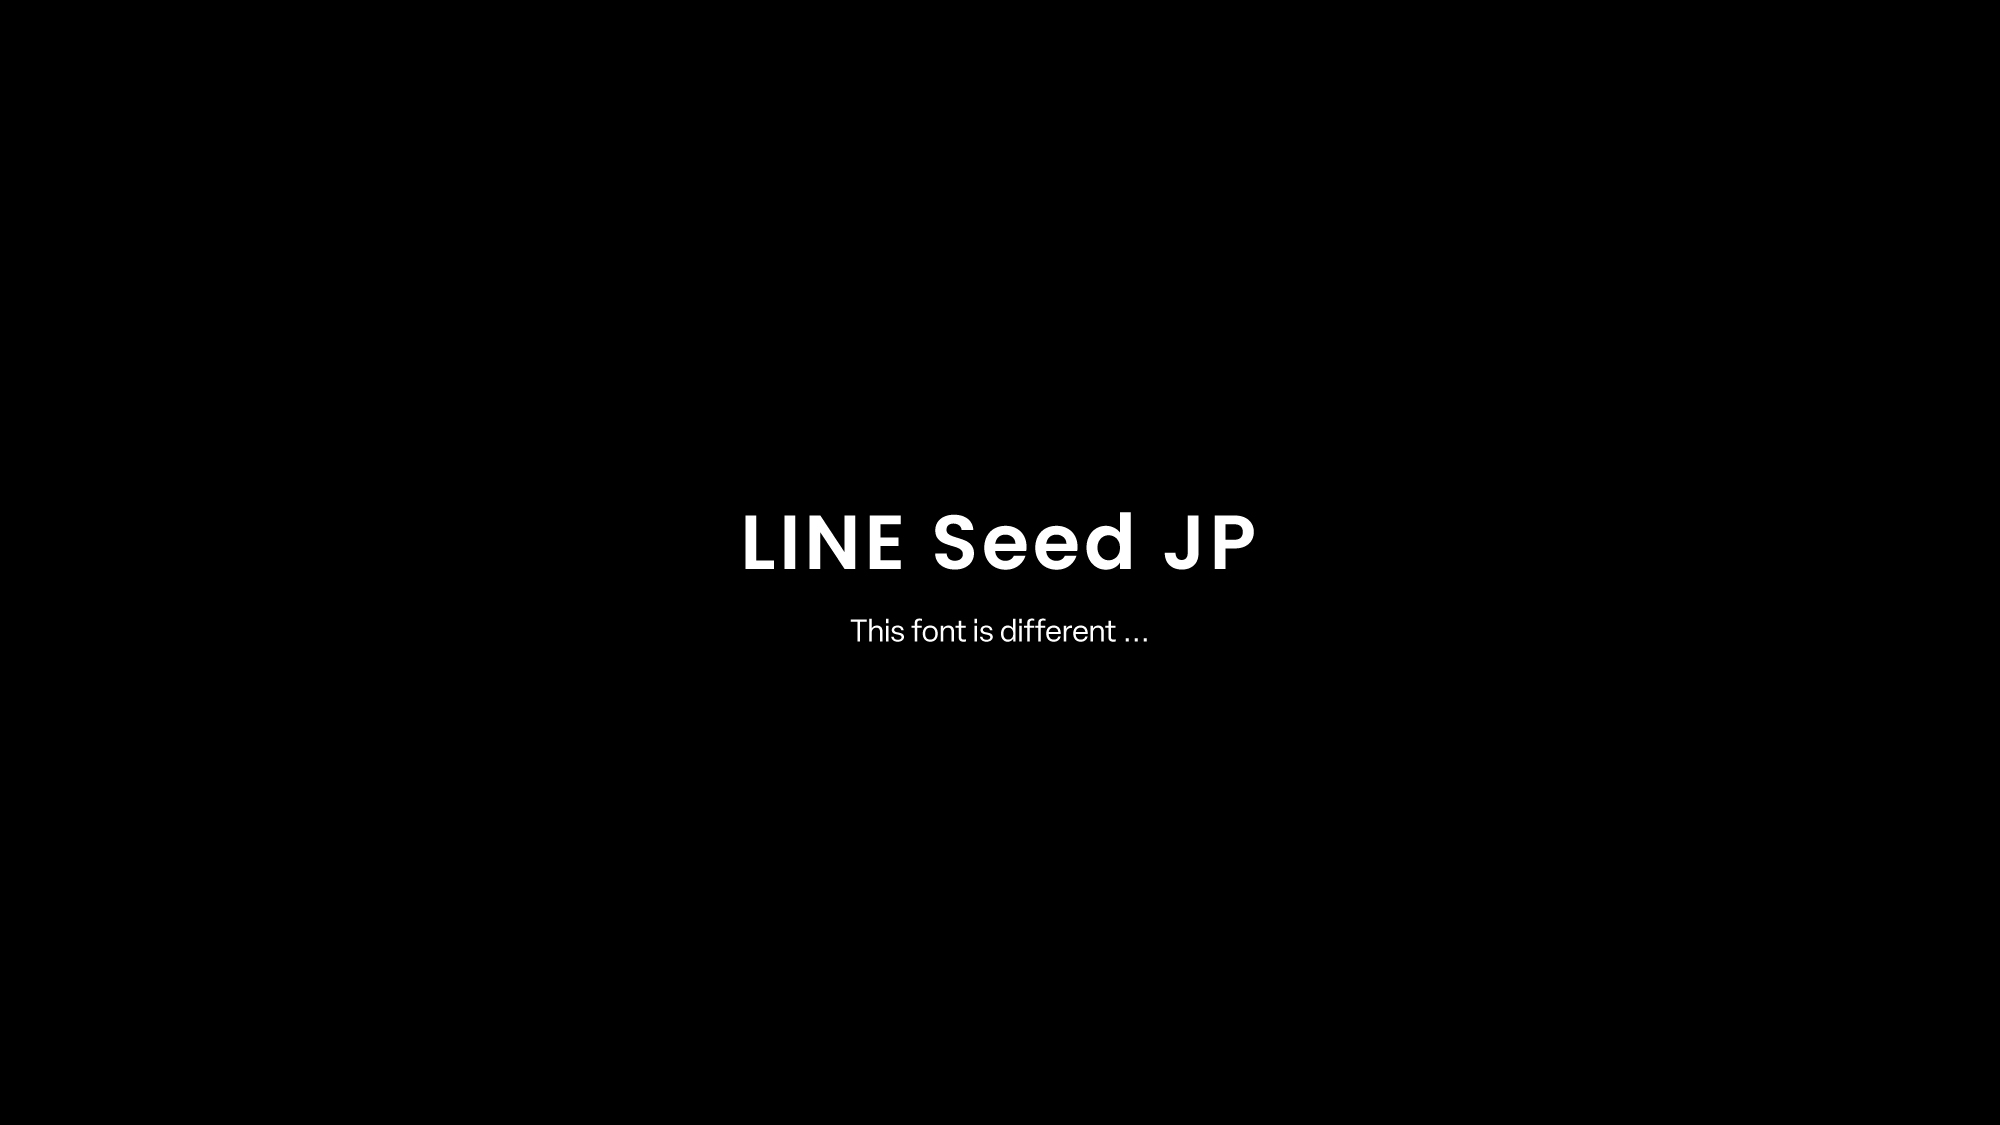 フォントワークス、LINEオリジナルフォント『LINE Seed JP』を共同開発